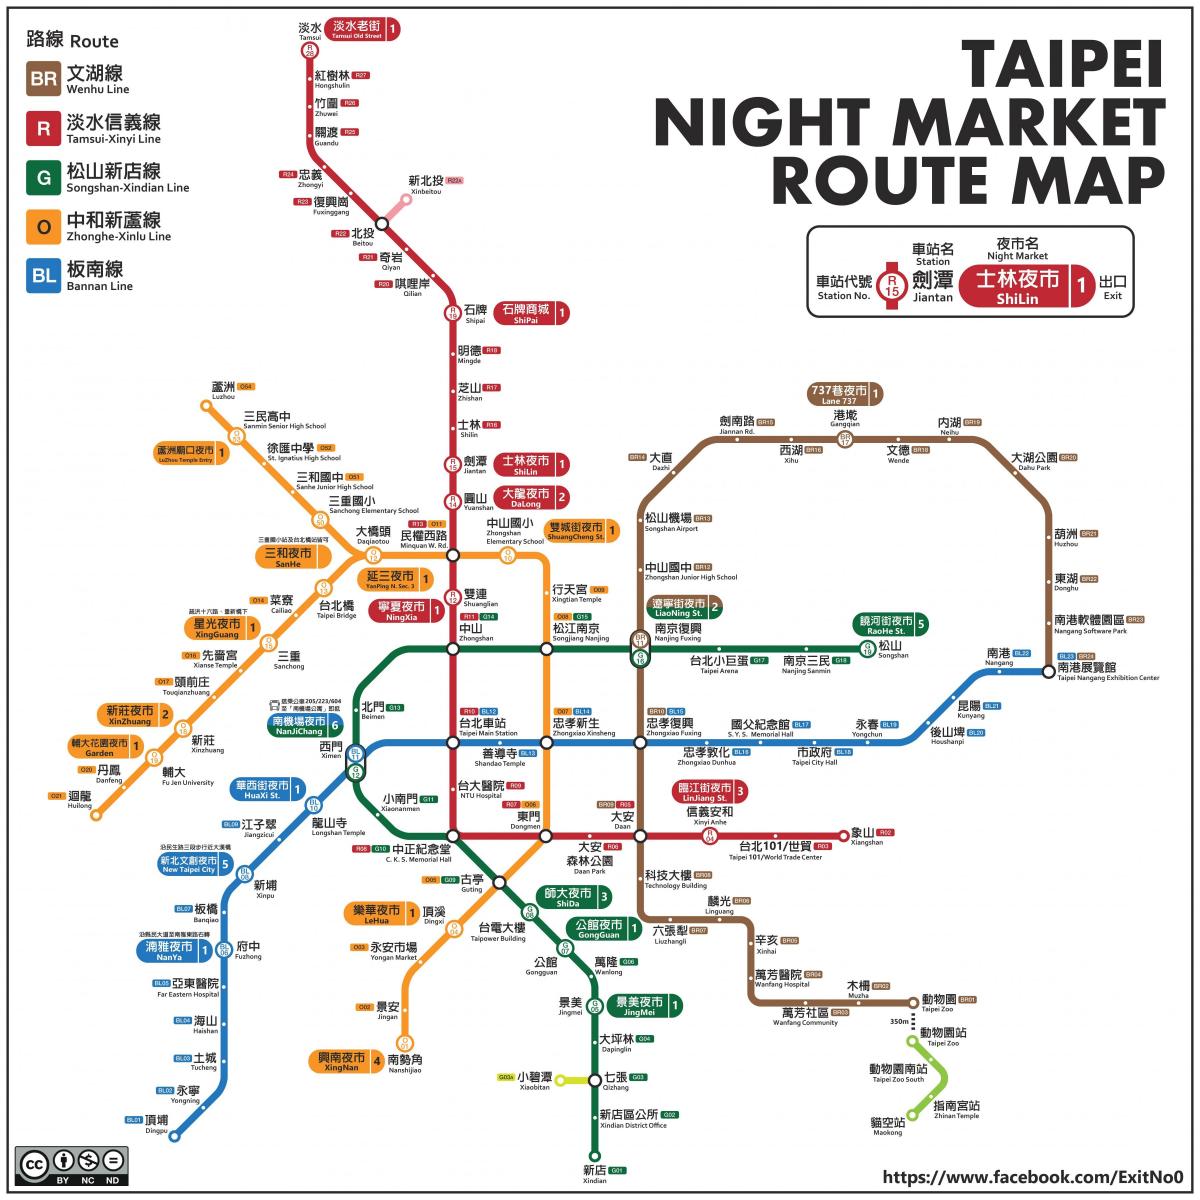 خريطة تايبيه الأسواق ليلا